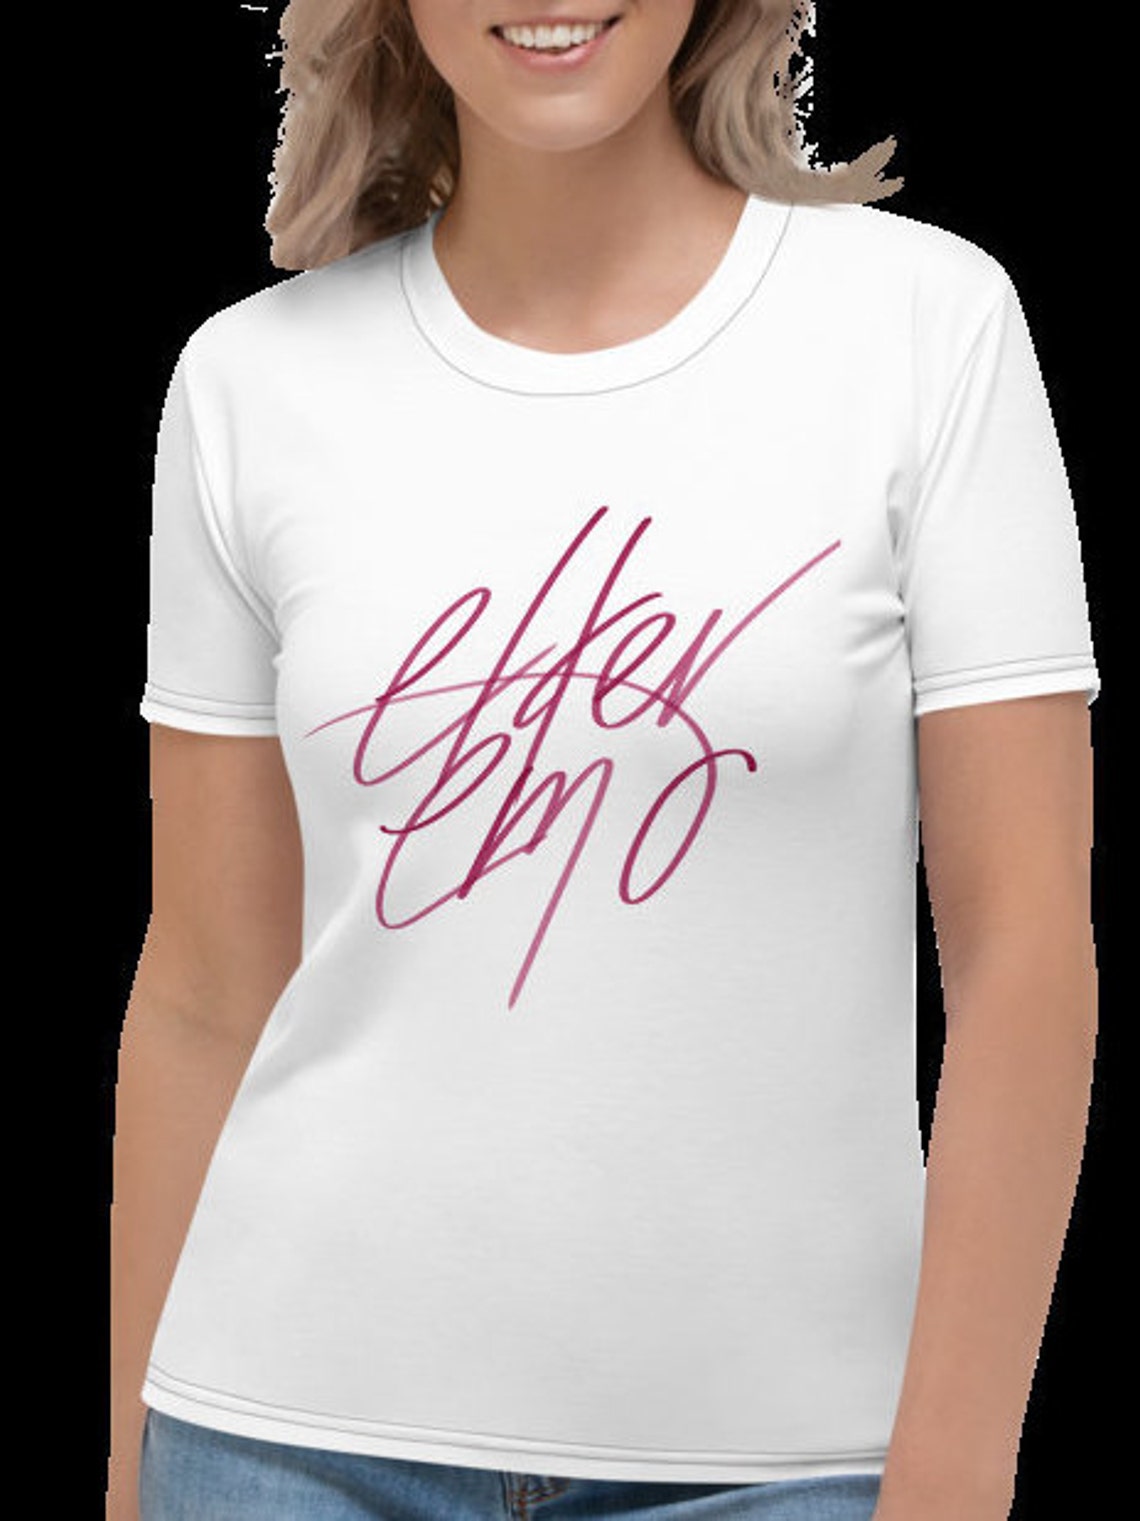 Elder emo Women's T-shirt | Etsy